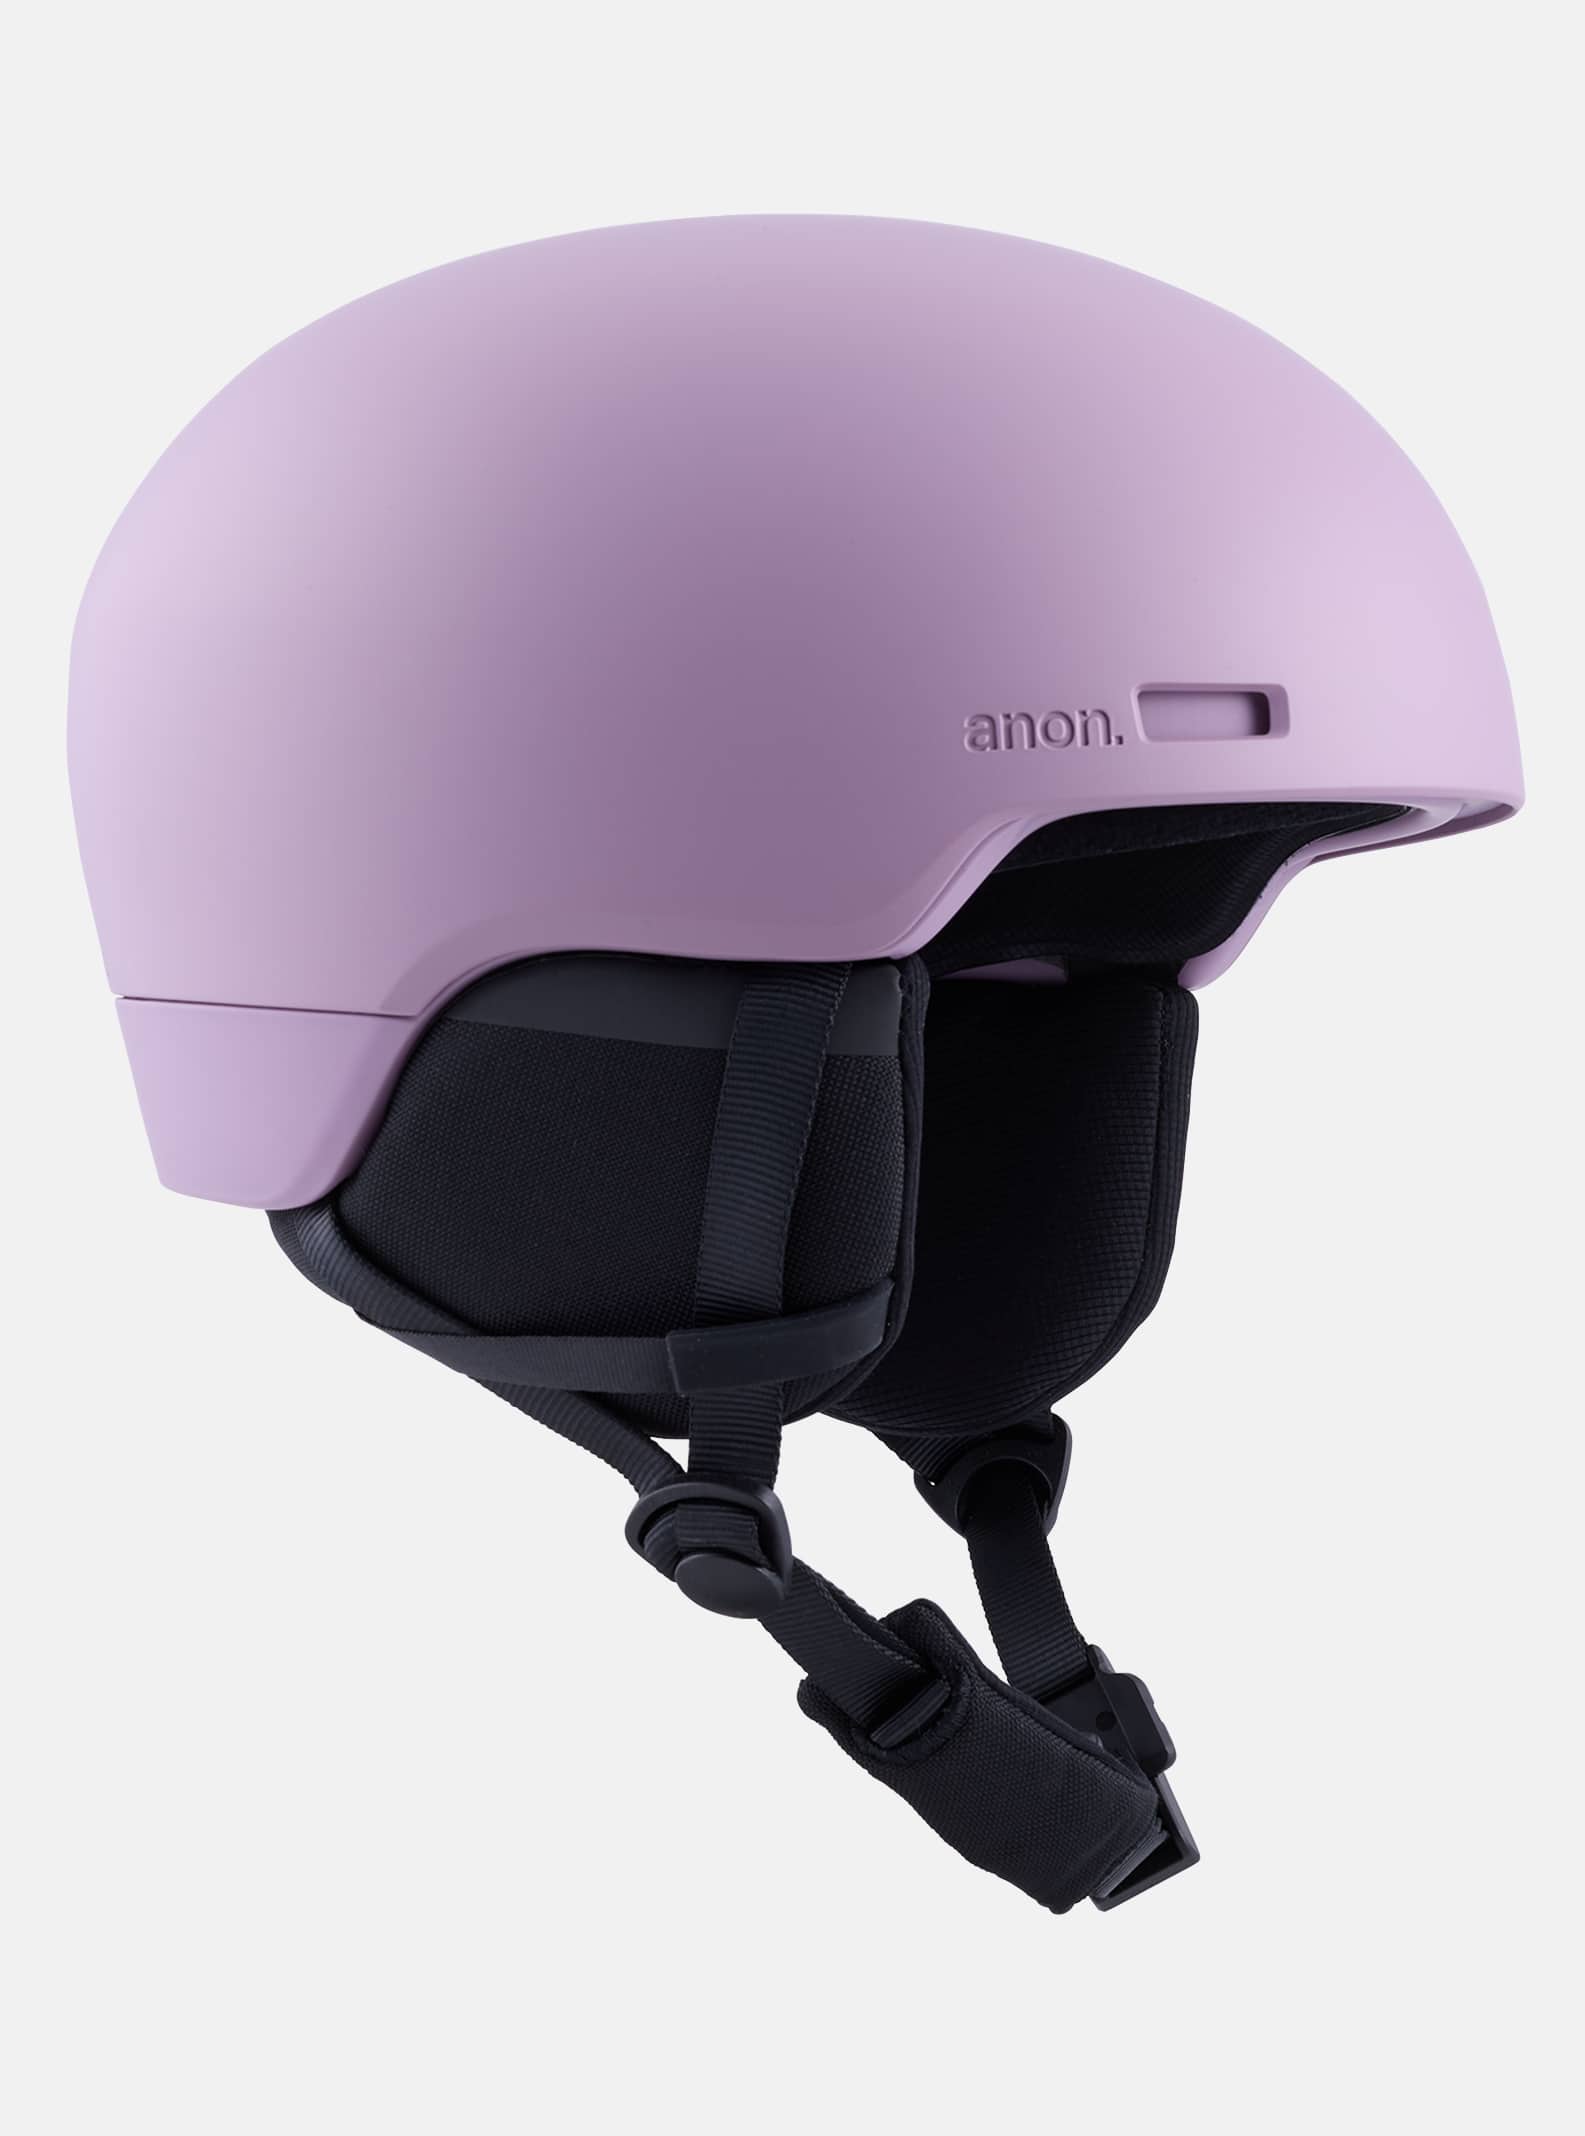 Men's Helmets | Ski & Snowboard Helmets for Women | Anon Optics US